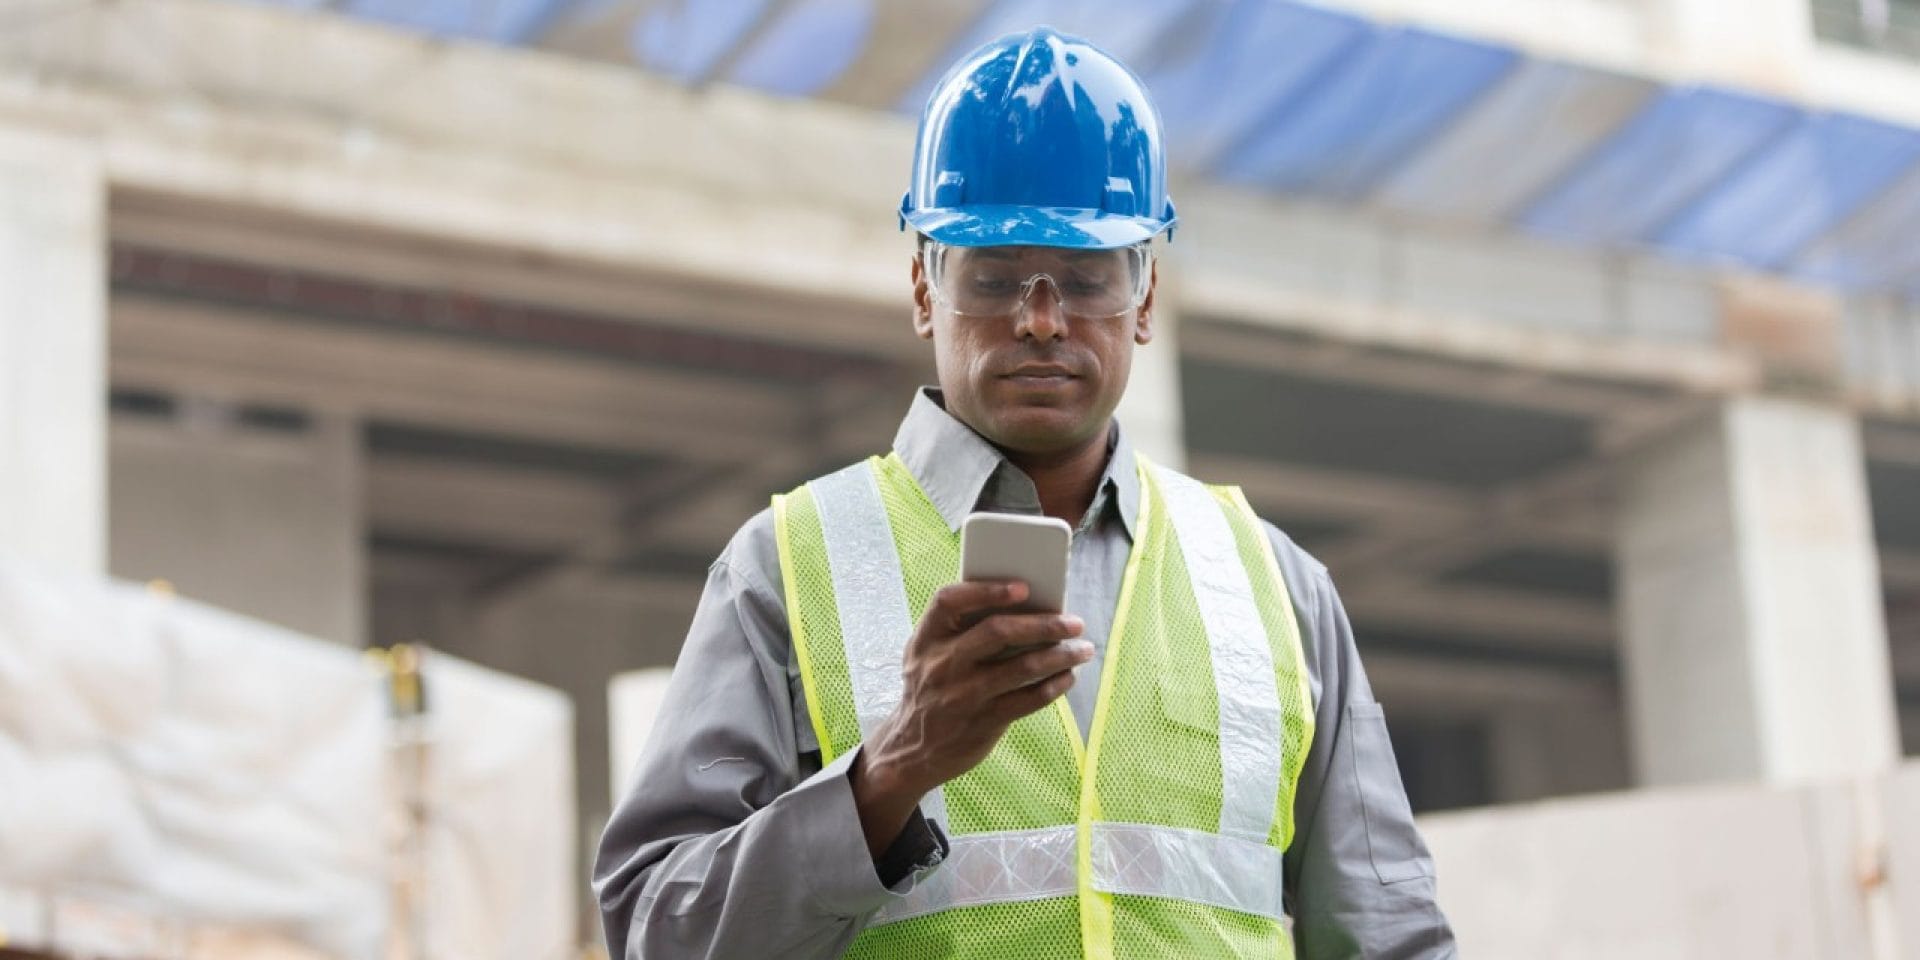 Un homme sur chantier consulte son smartphone dans sa main